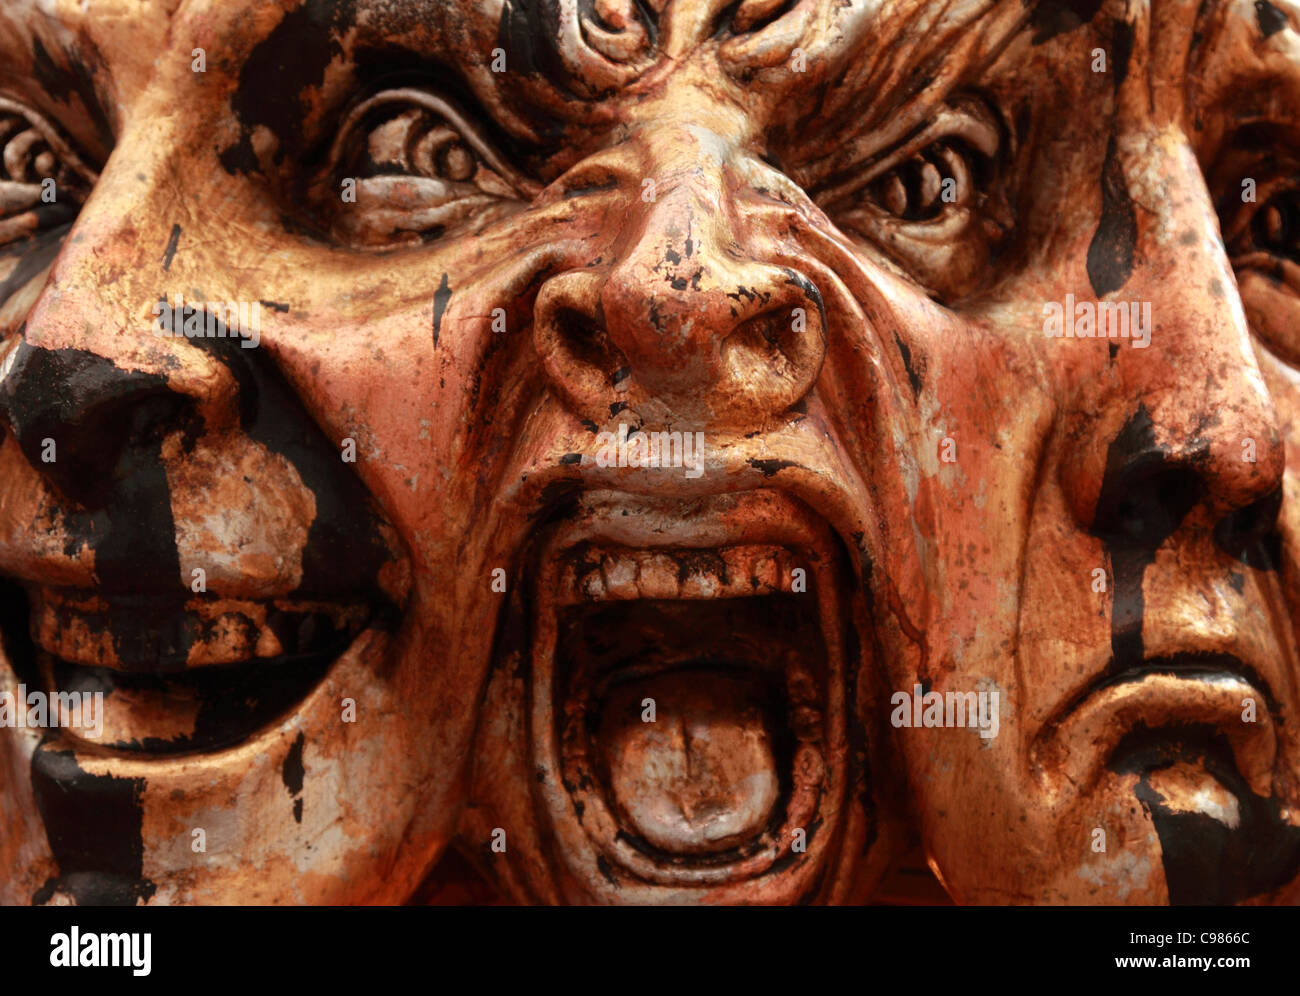 Image en gros plan d'un masque de Venise représentant trois expressions du visage Banque D'Images